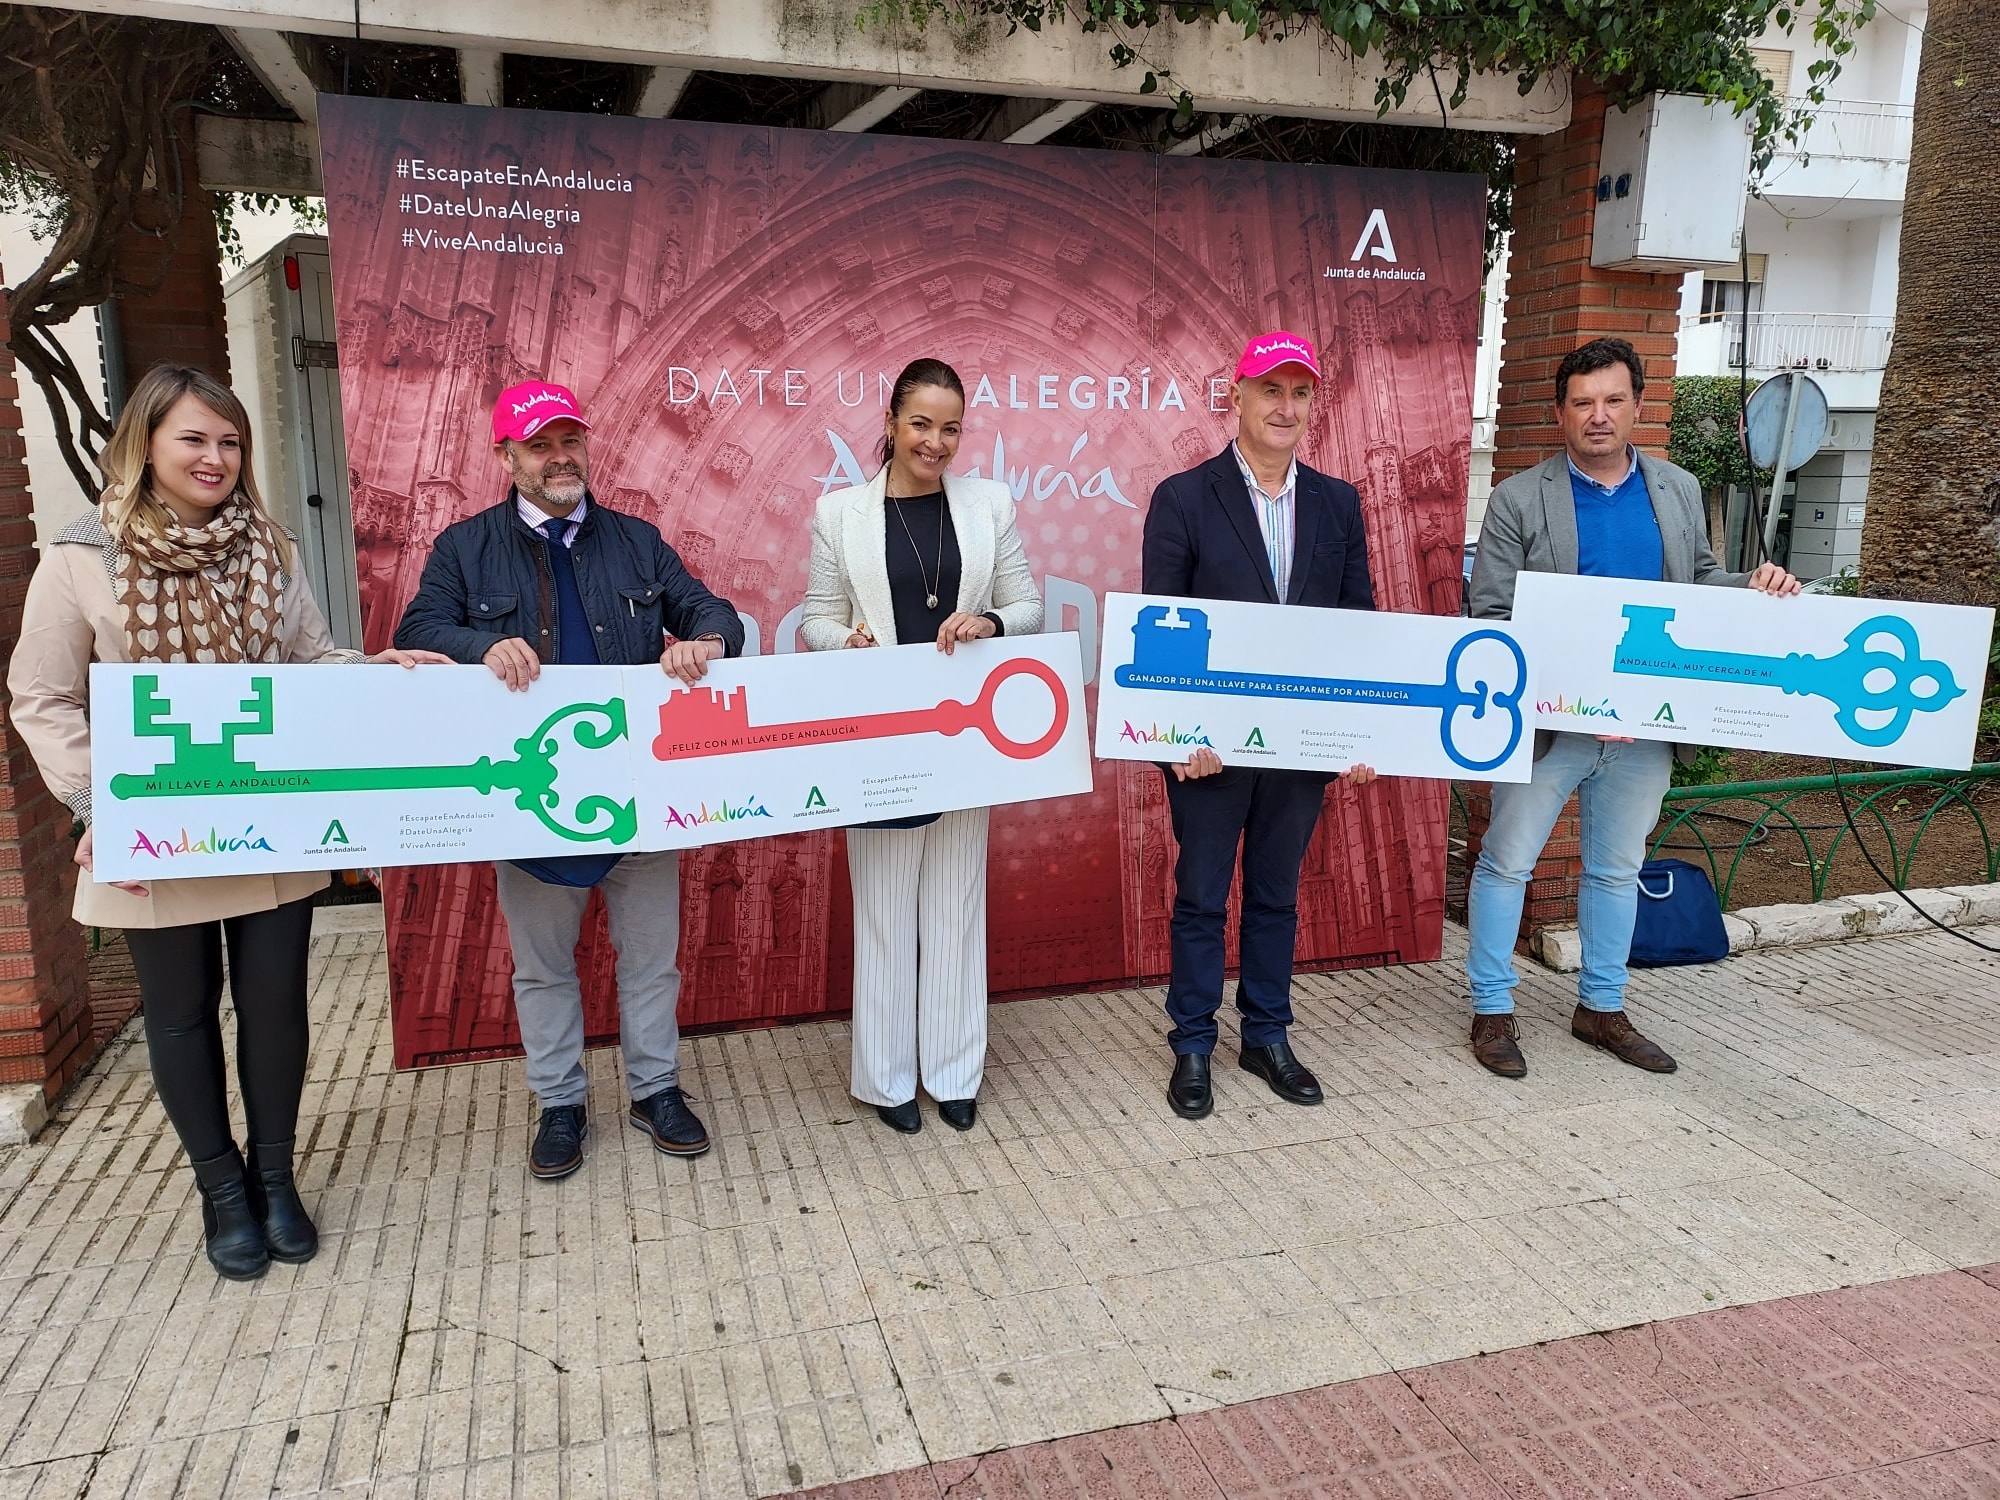 Lepe acogió la campaña de promoción turística ‘Date una alegría en Andalucía ¡Escápate!